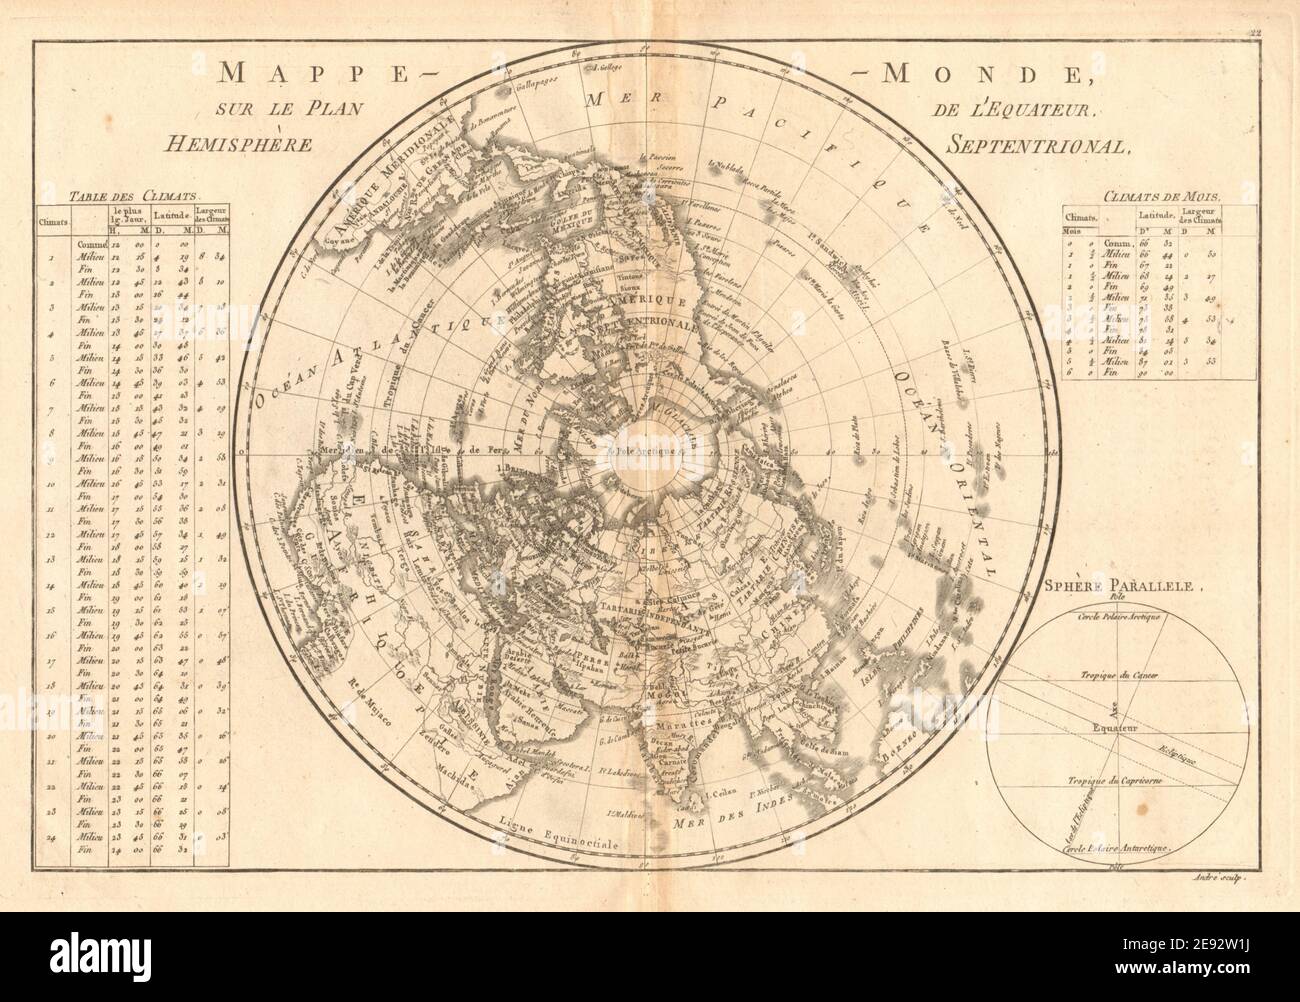 Mappe-monde sur le plan de l’Équateur, hémisphère Septrional. BONNE 1787 Banque D'Images